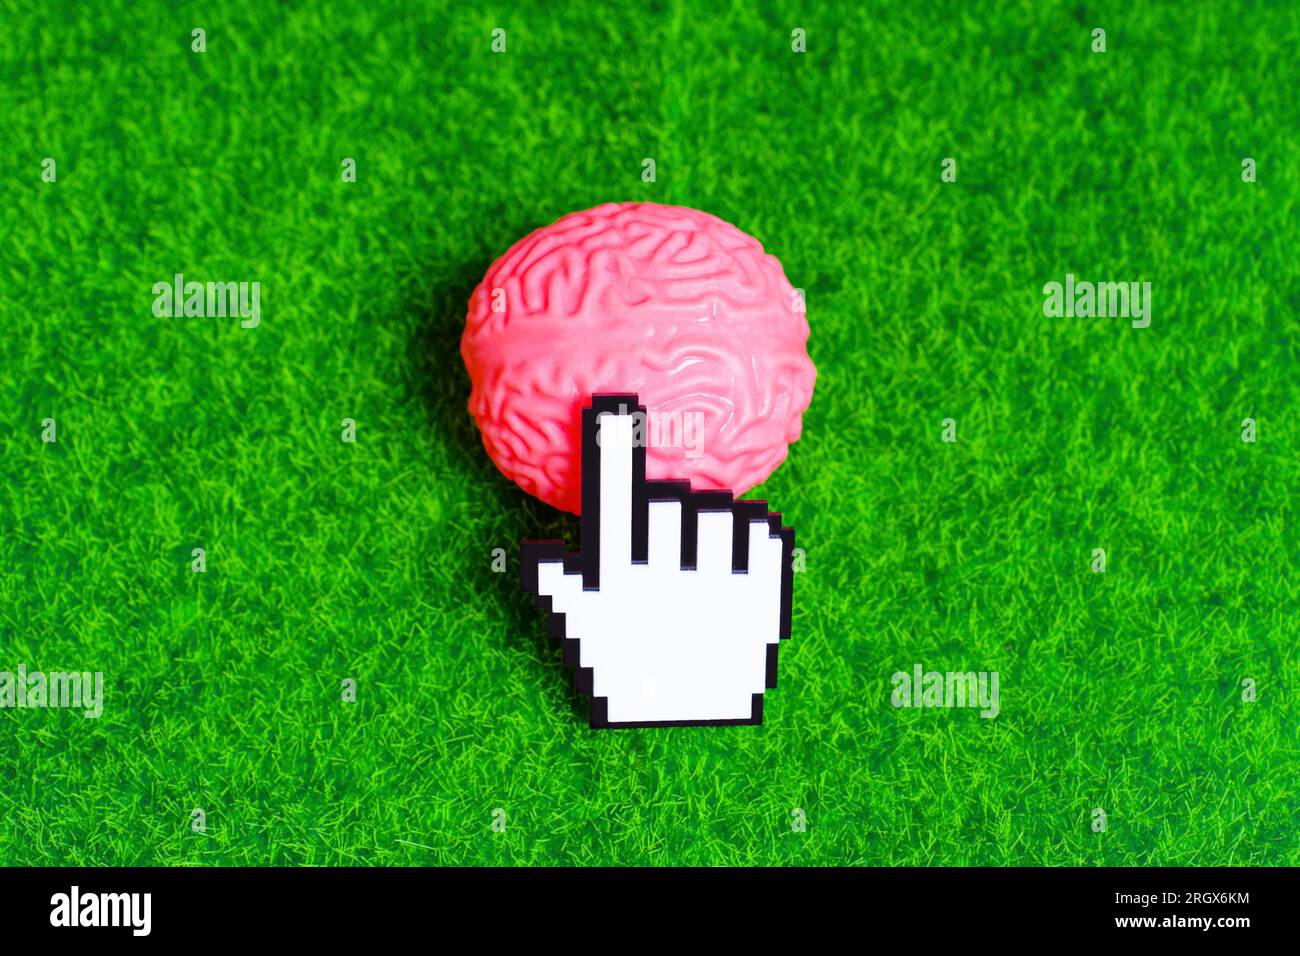 Der weiße blockige Plastikzeiger klickt auf ein pinkfarbenes menschliches Hirnmodell, das auf einem grünen Rasenhintergrund platziert ist. Stockfoto